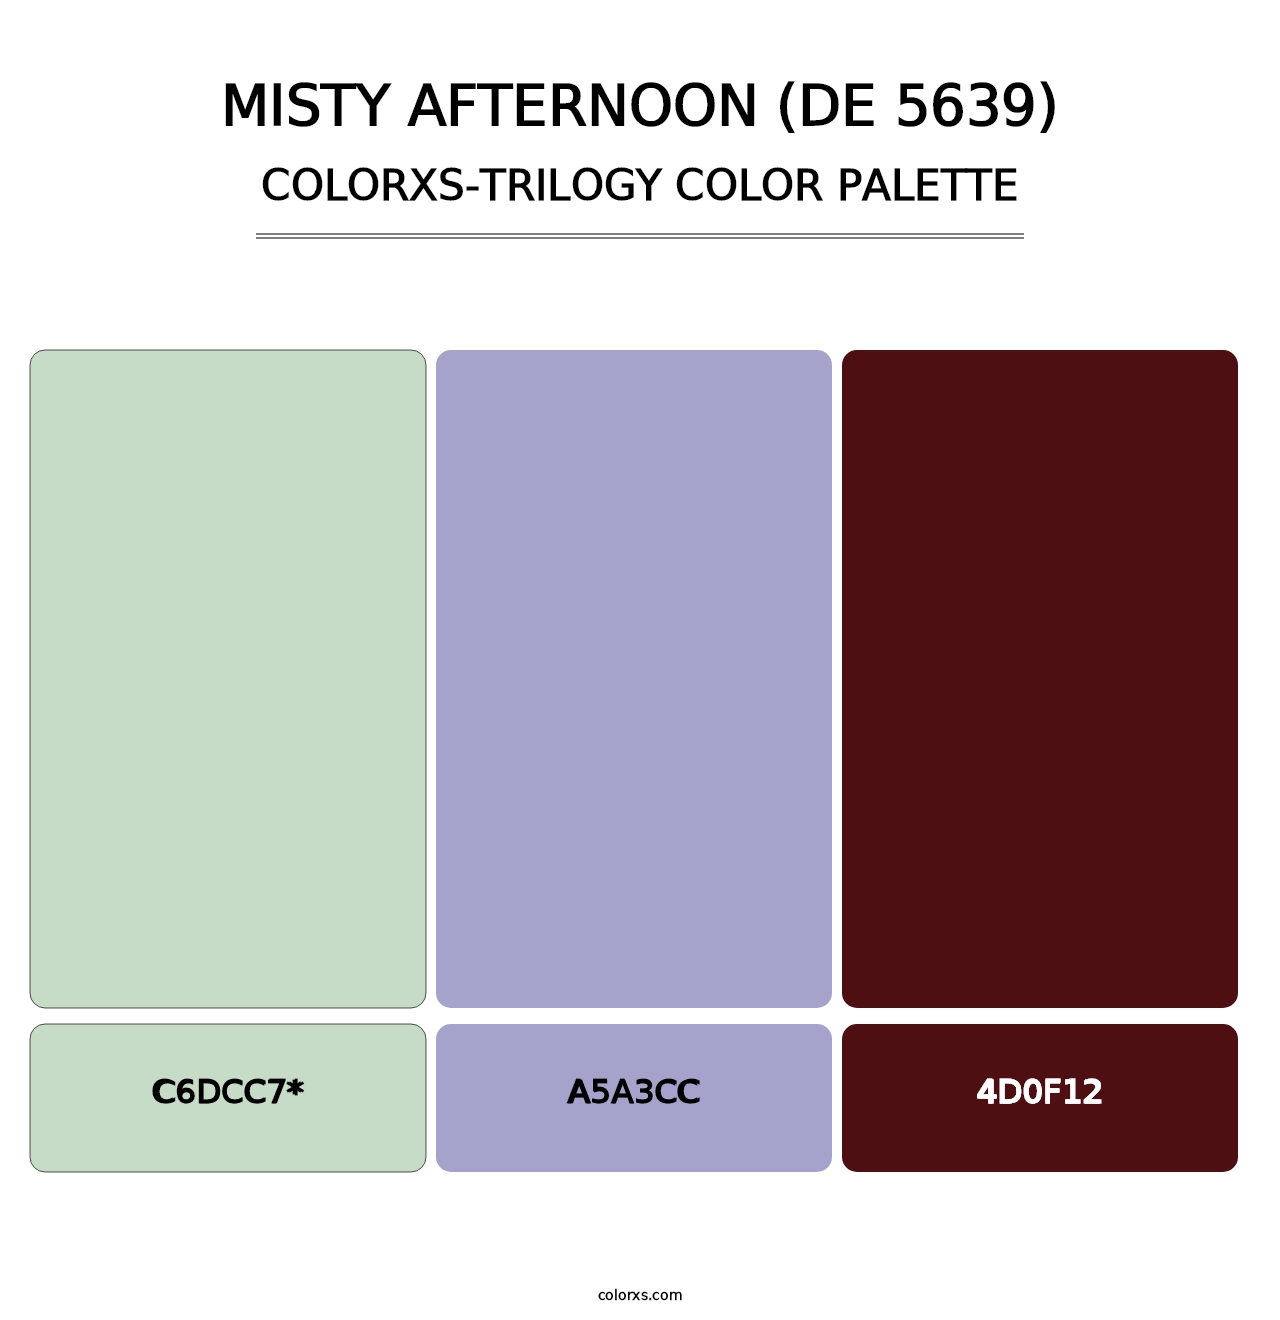 Misty Afternoon (DE 5639) - Colorxs Trilogy Palette